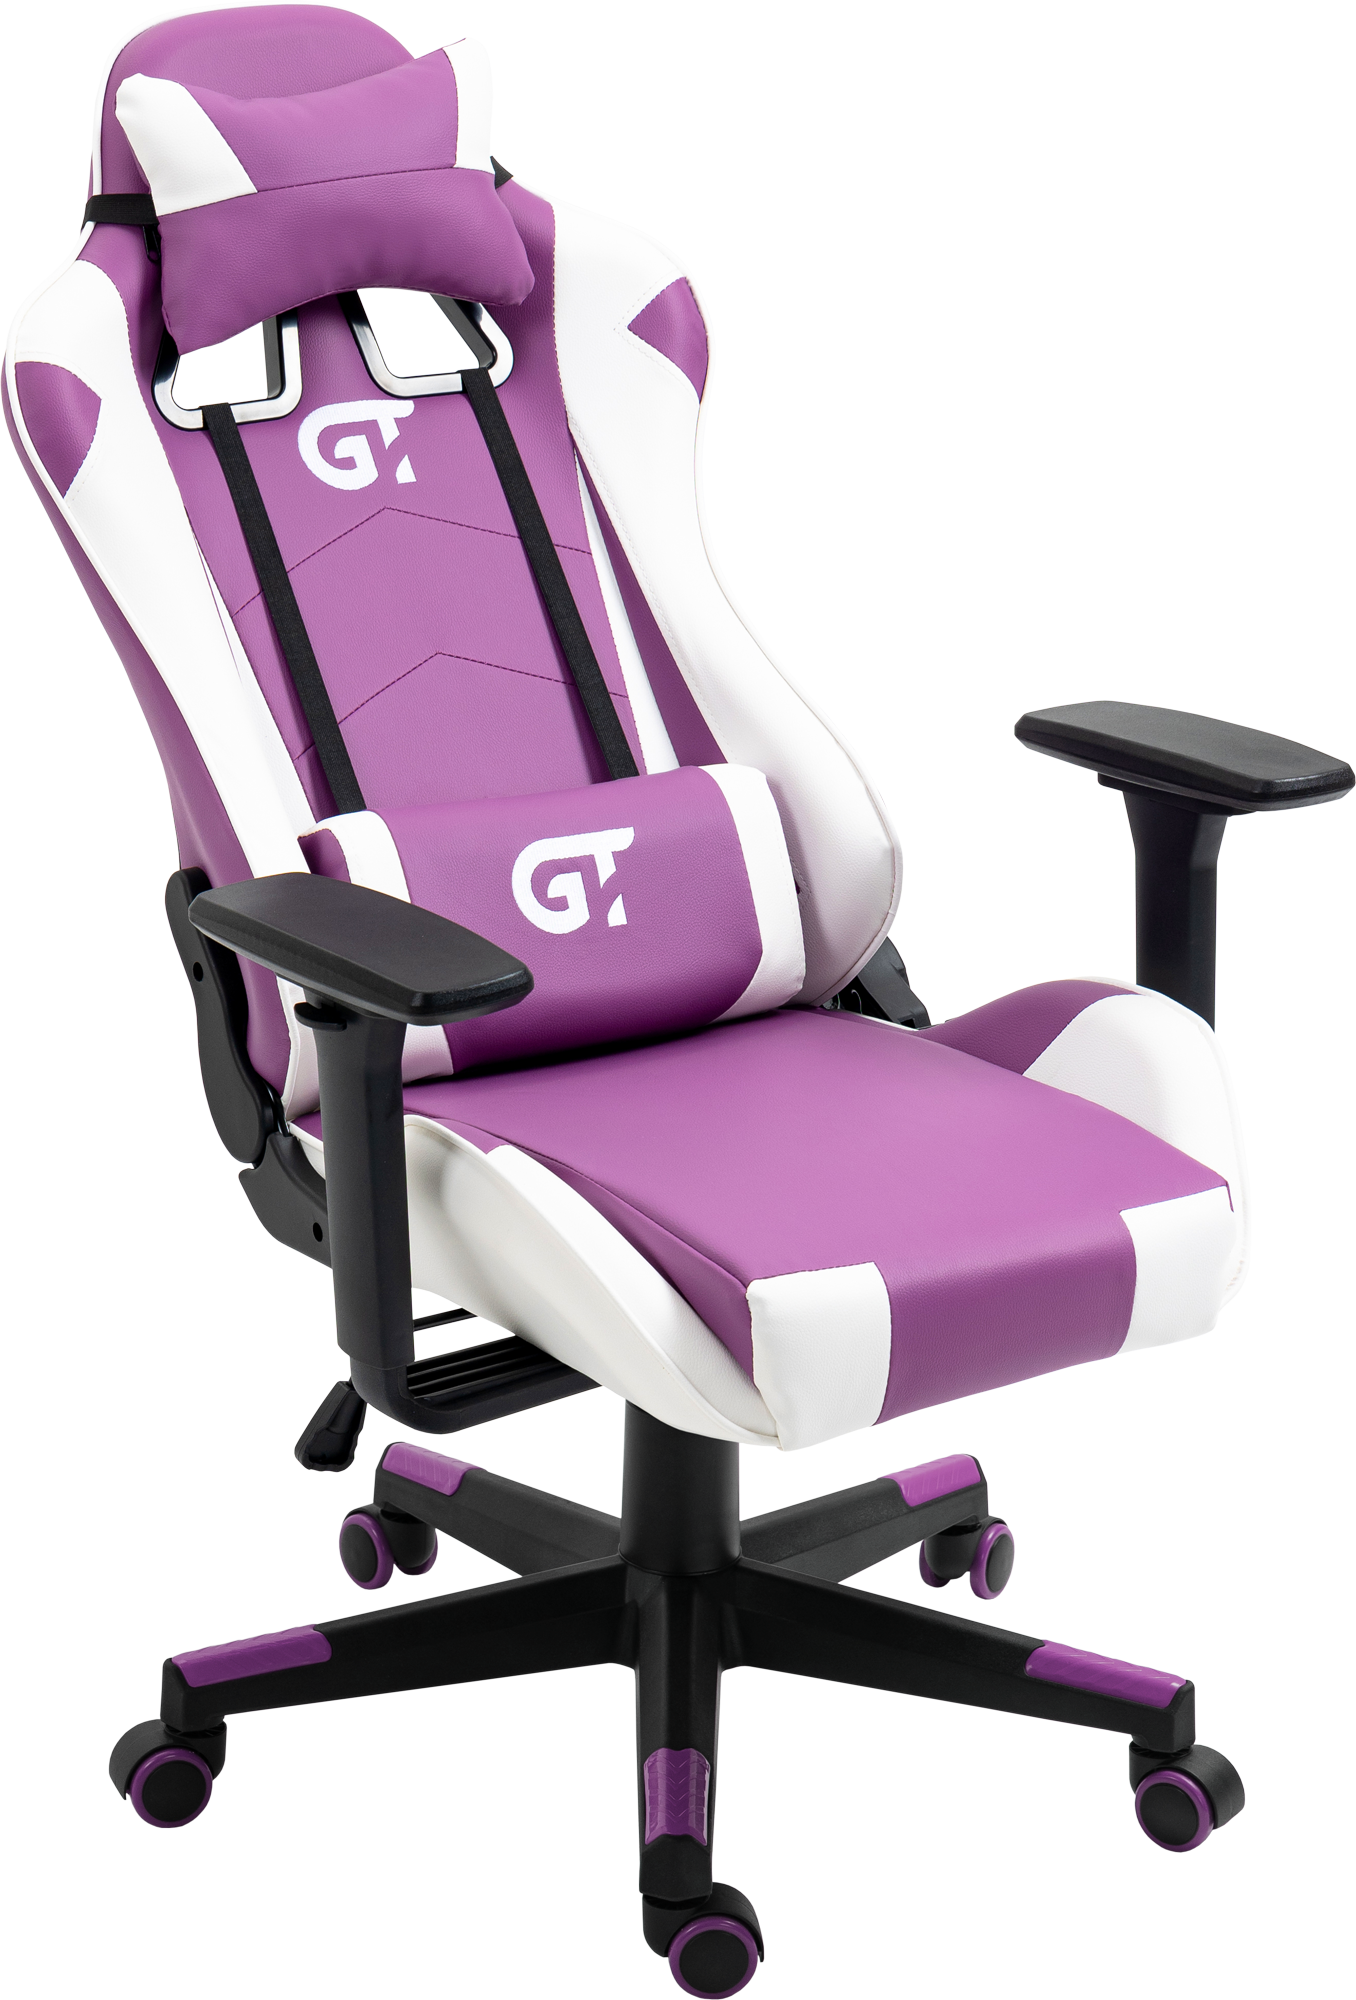 Геймерське дитяче крісло GT Racer біле з фіолетовим (X-5934-B Kids White/Violet) - фото 6